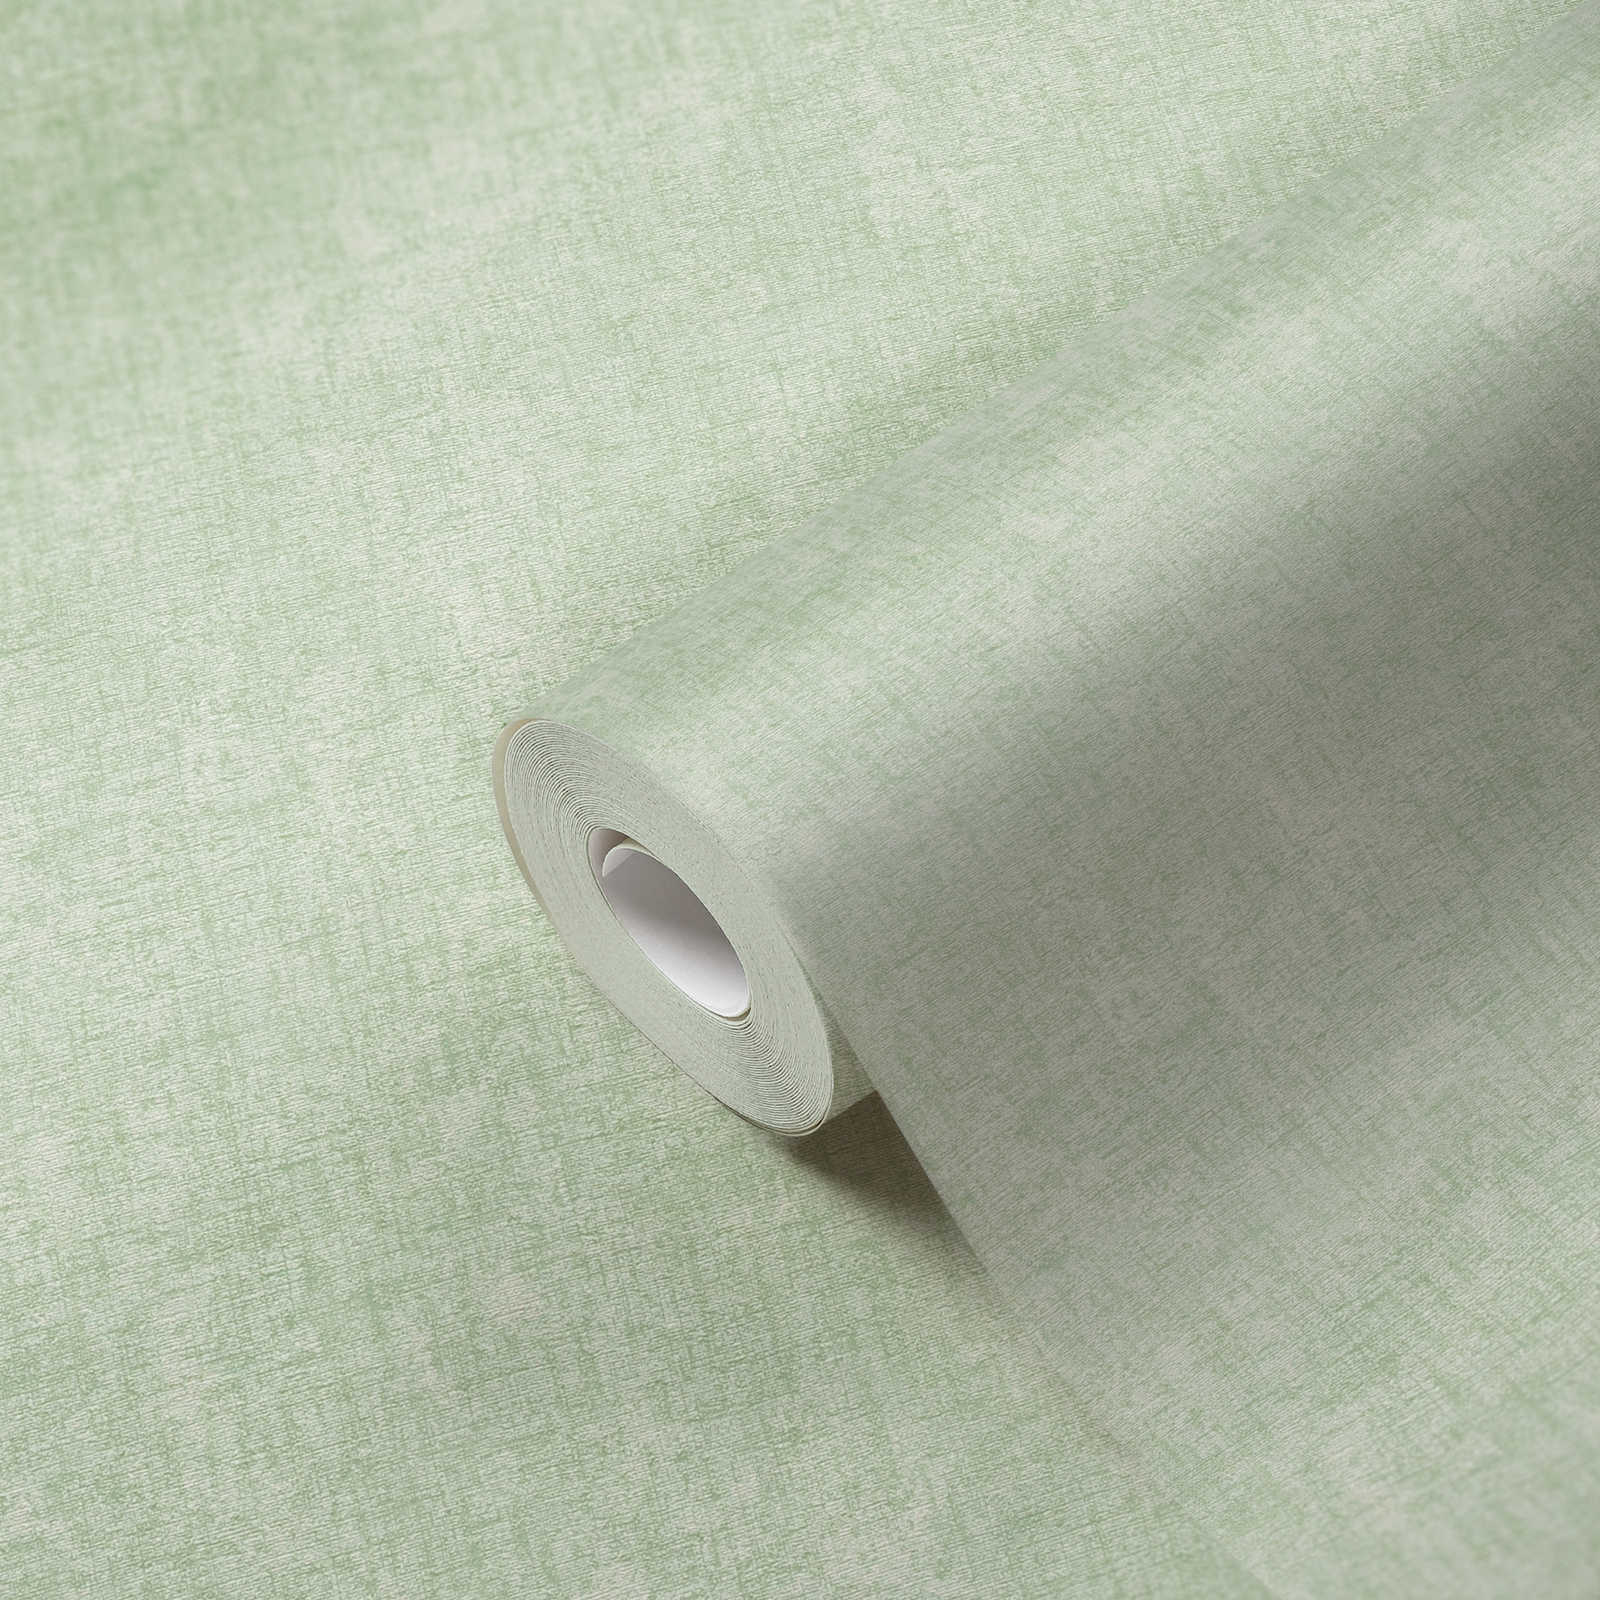             Mintgroen behang effen met textuurdetails - Groen
        